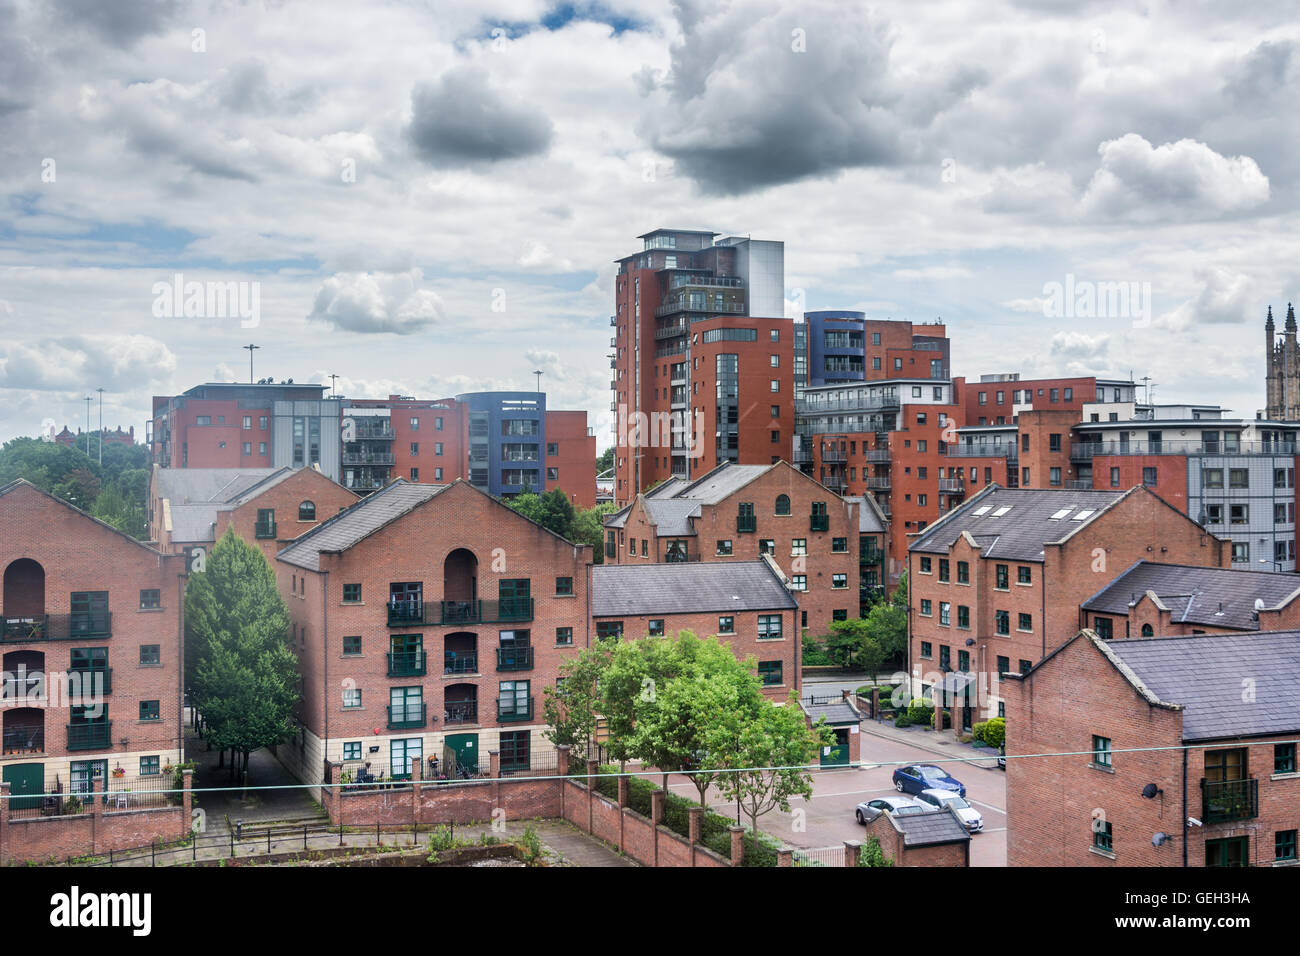 Imágenes urbanas del centro de la ciudad de Manchester Foto de stock